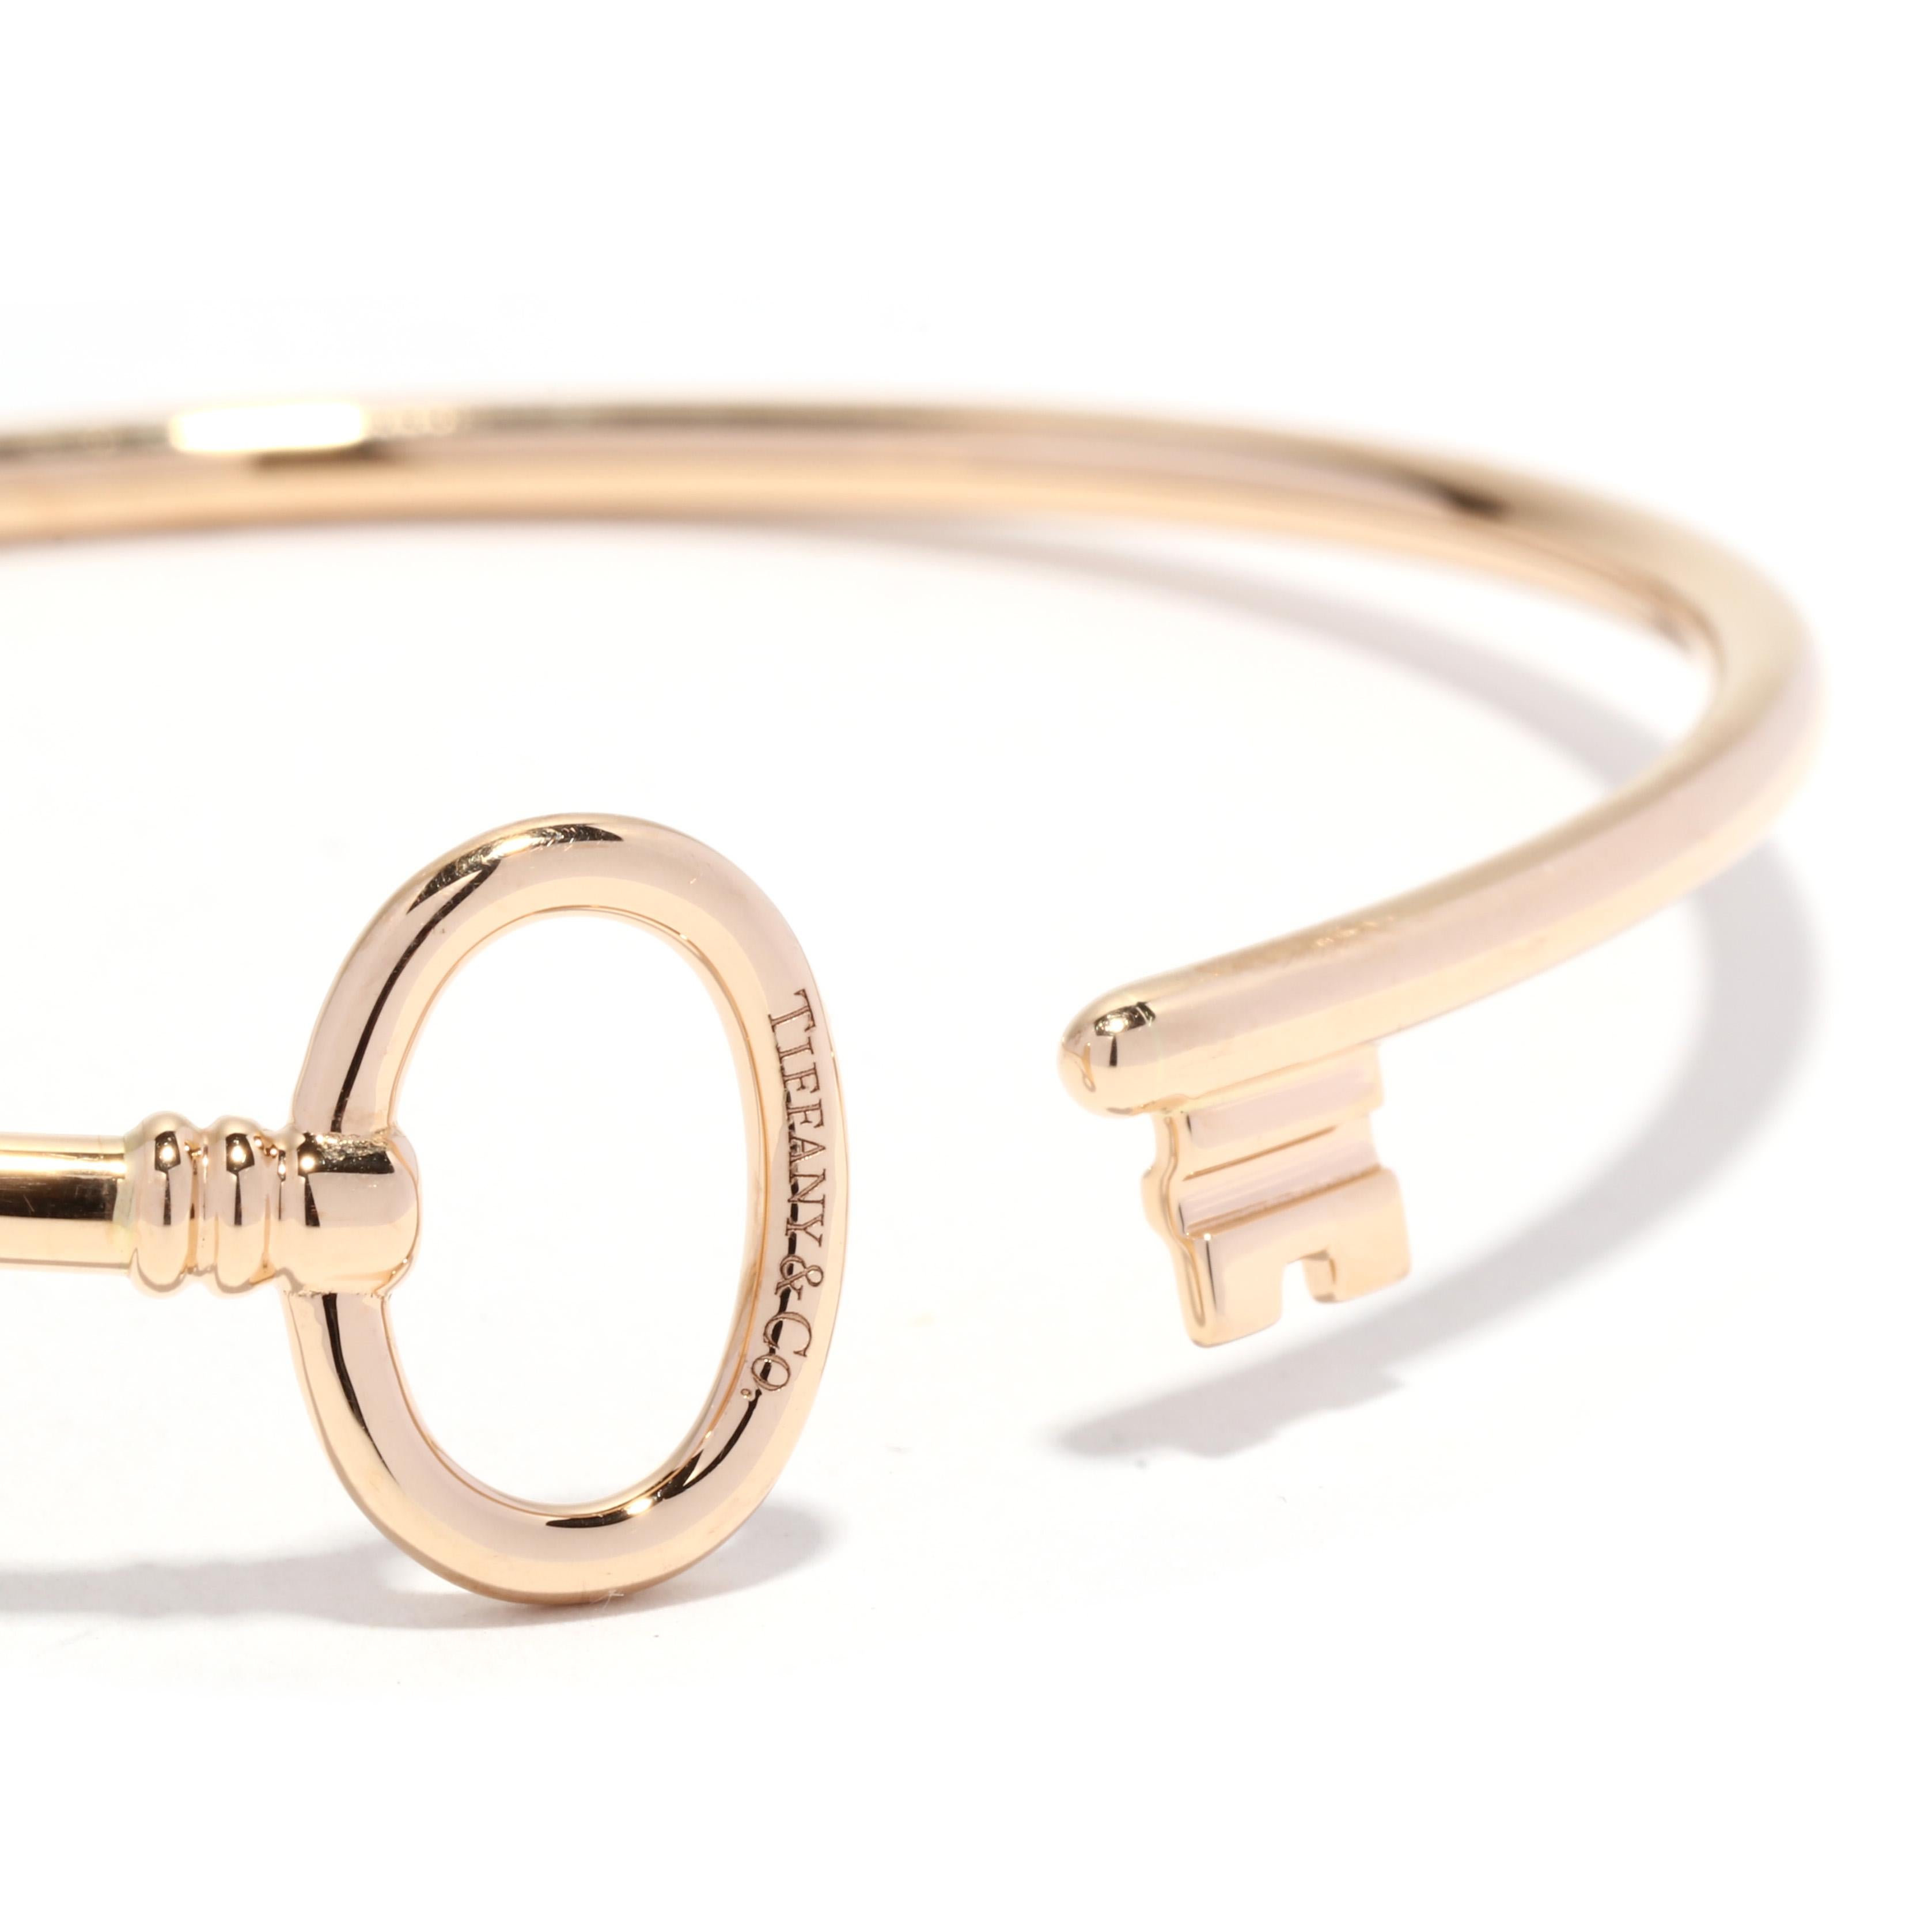 tiffany keys wire bracelet